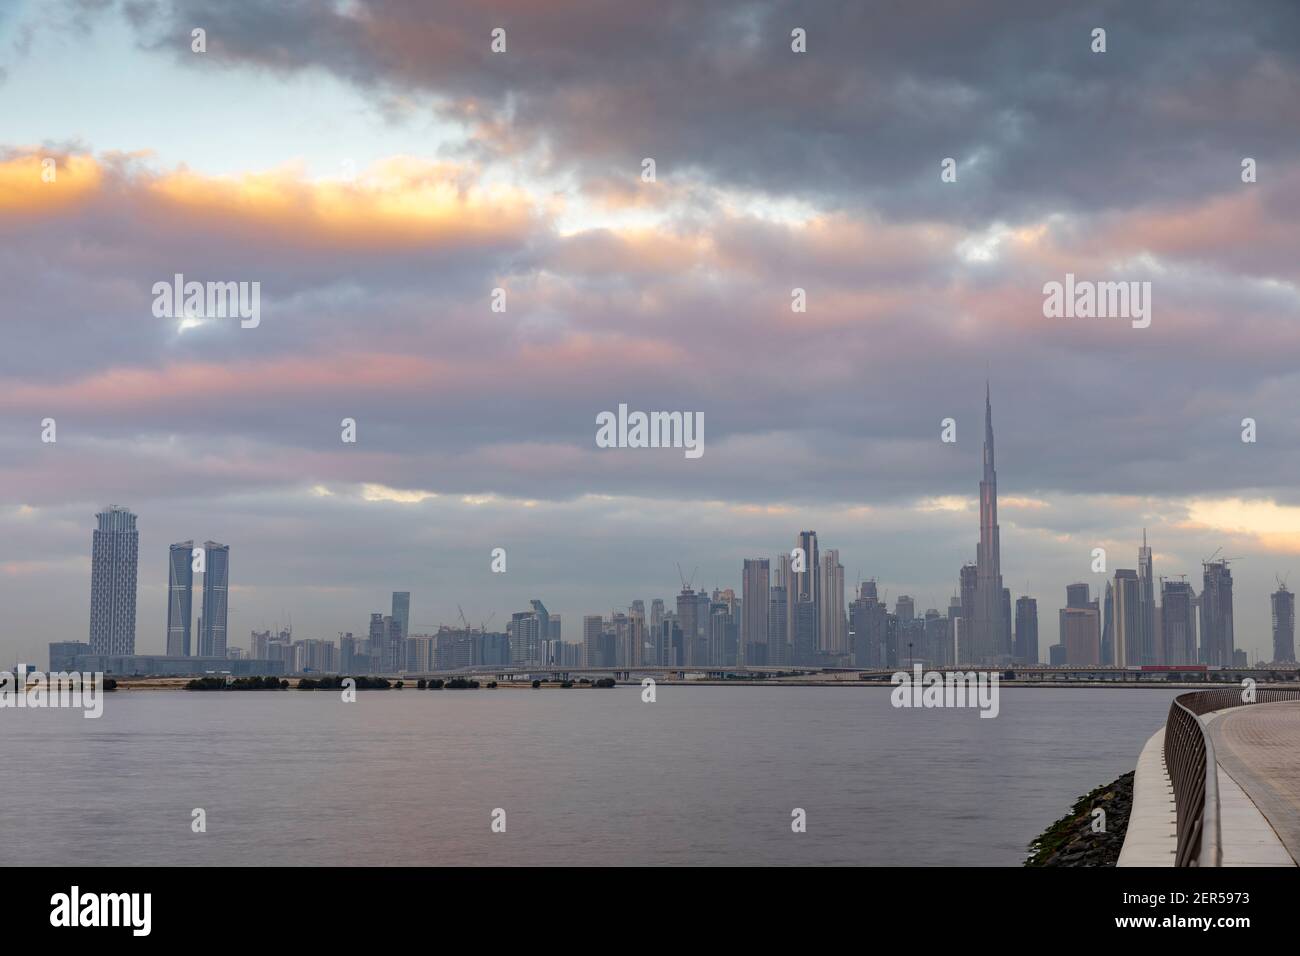 Dubai, United Arab Emirates, 27th February 2021: dubai skyline over Creek at sundrise Stock Photo